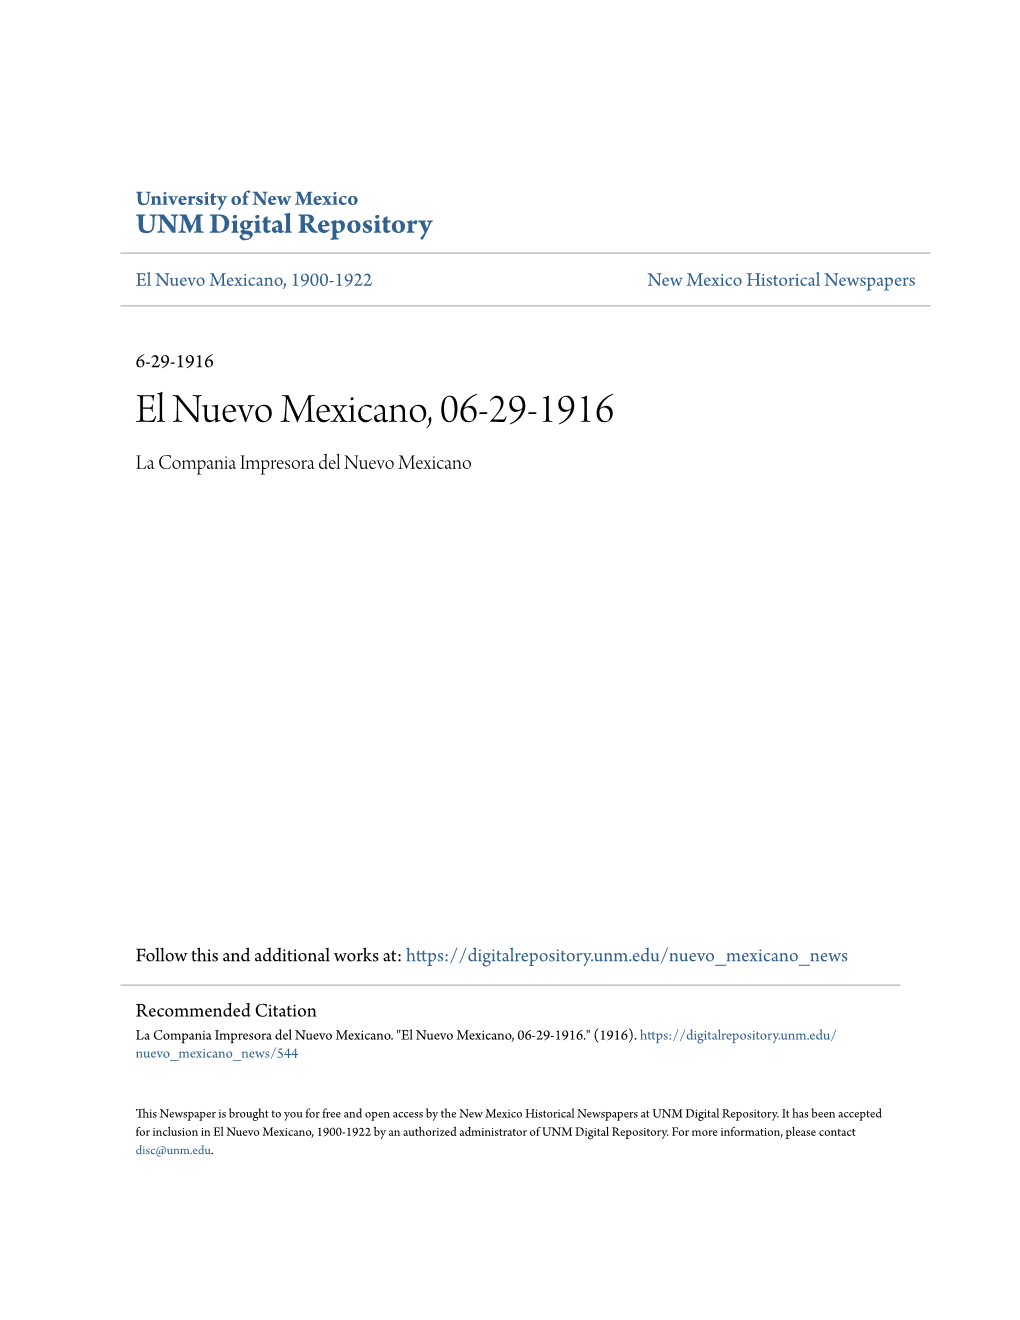 El Nuevo Mexicano, 06-29-1916 La Compania Impresora Del Nuevo Mexicano